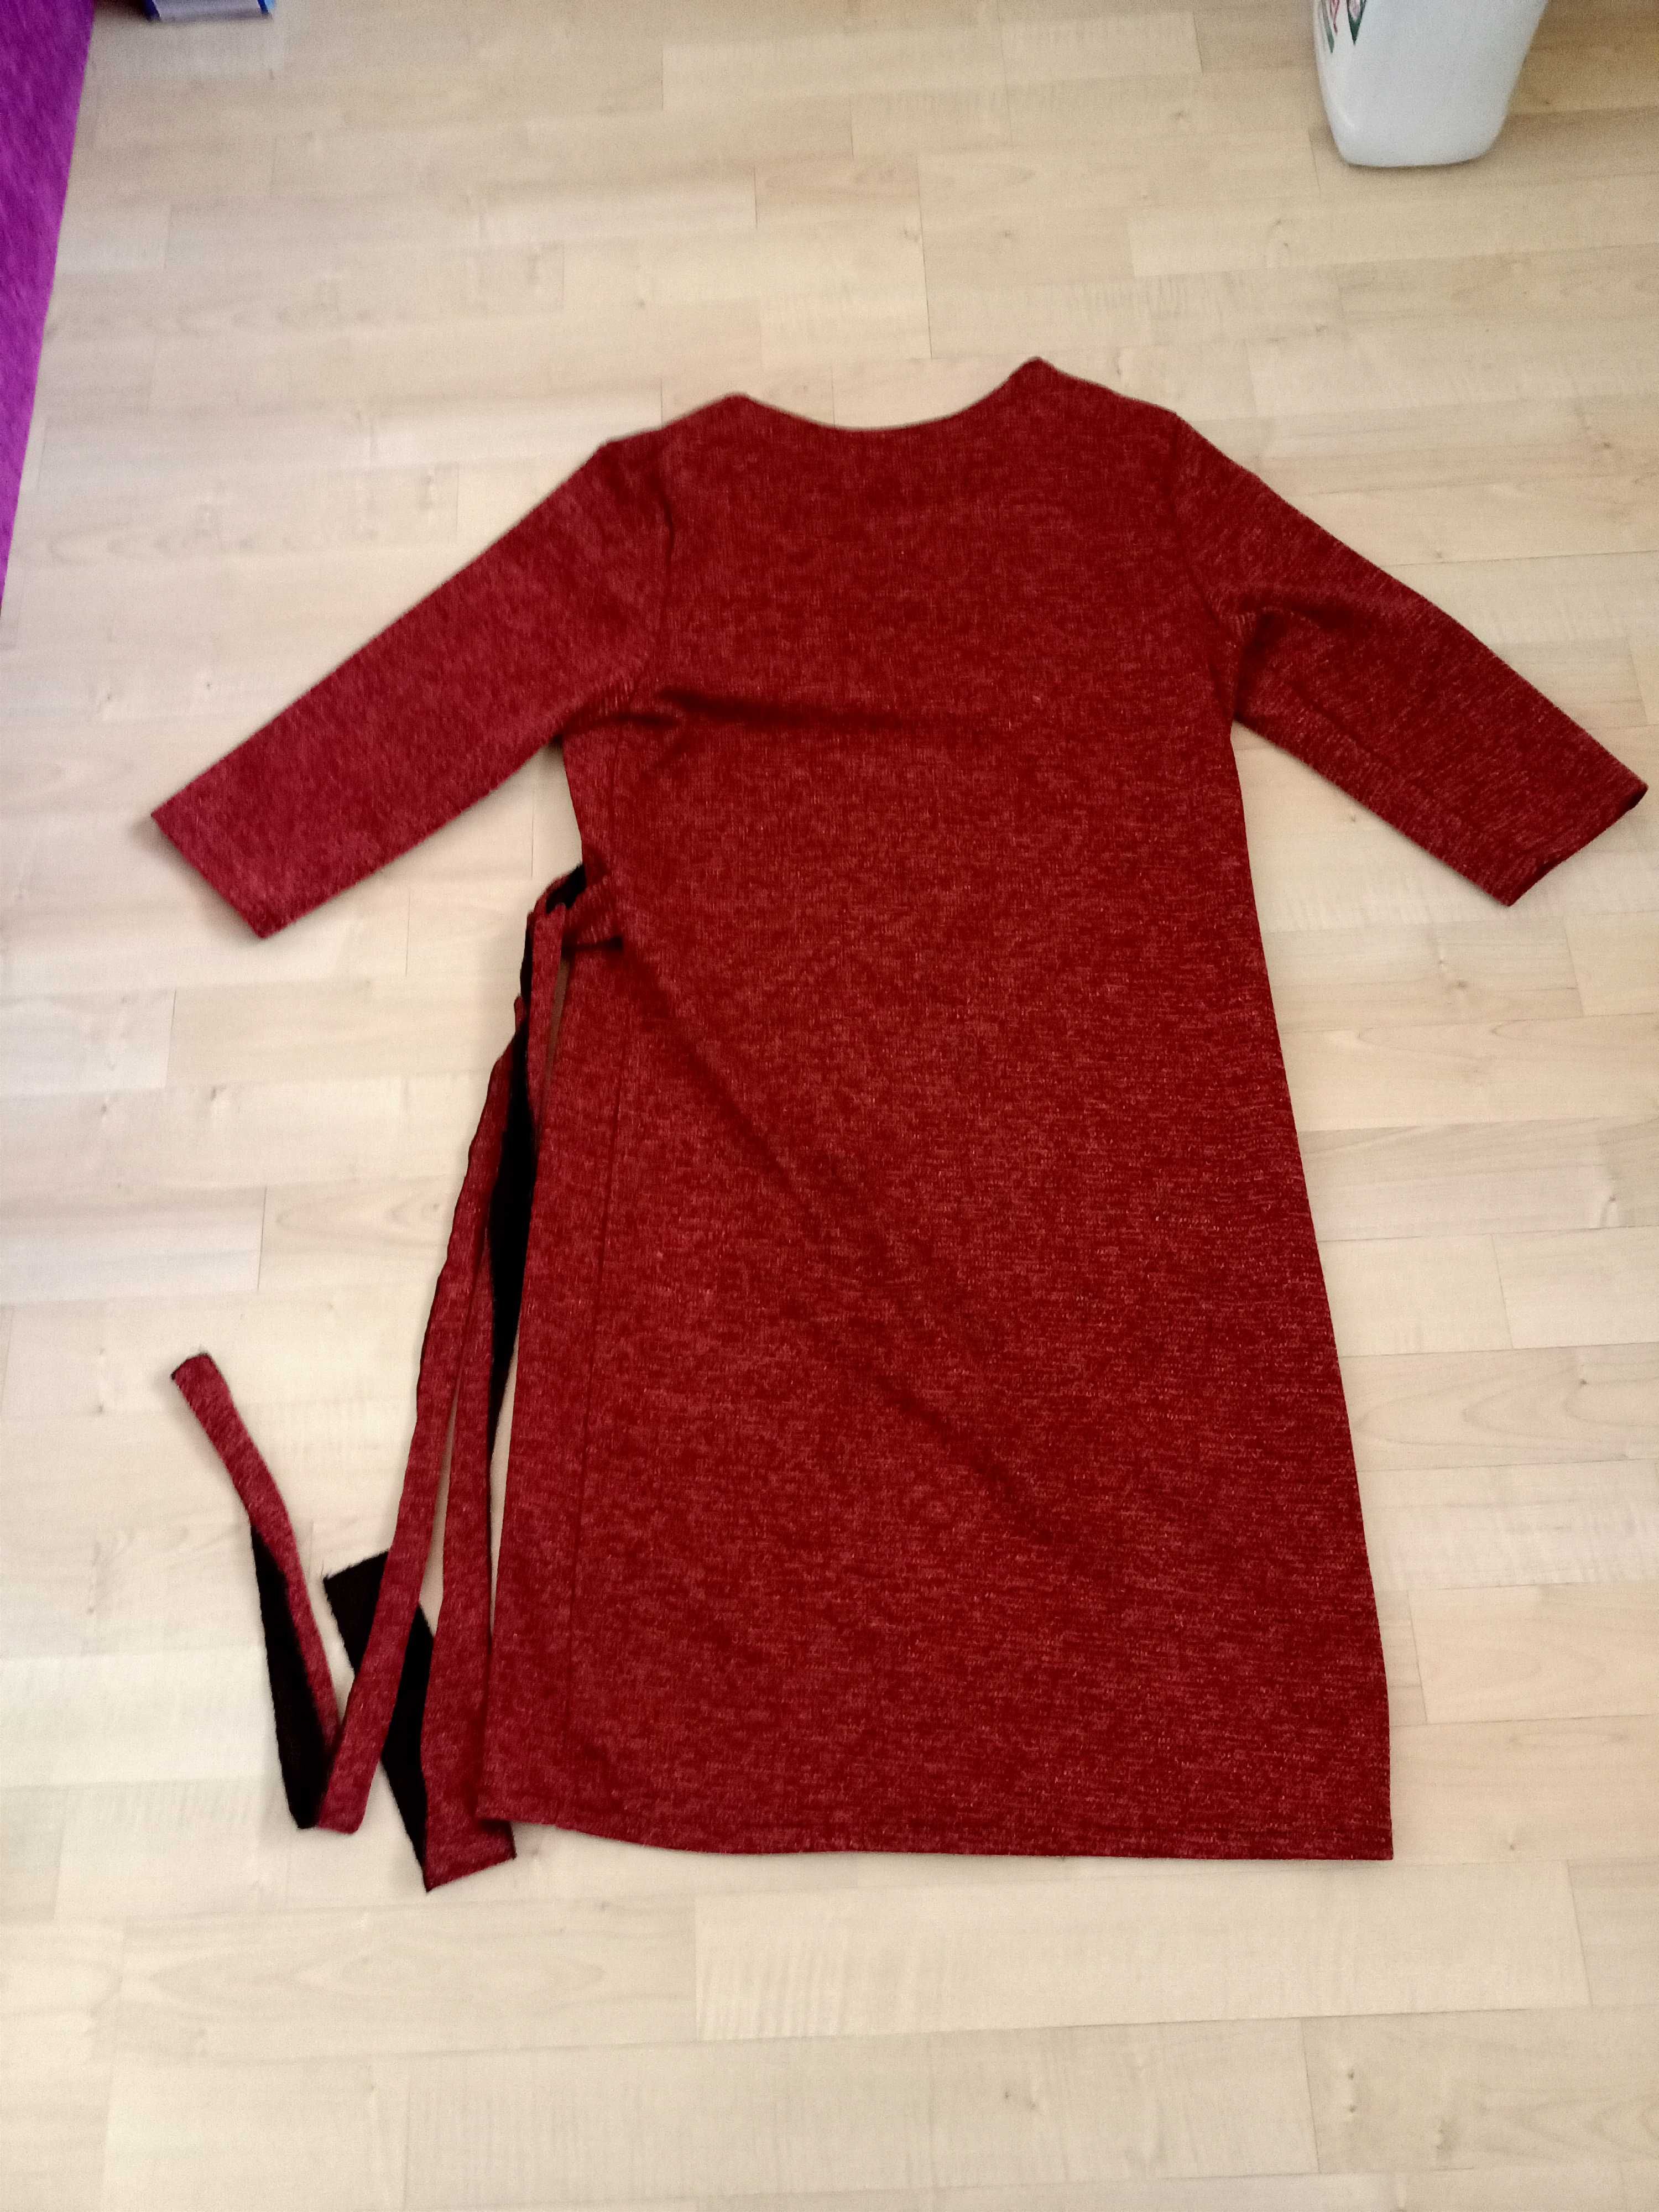 Sukienka czerwona rozmiar 38